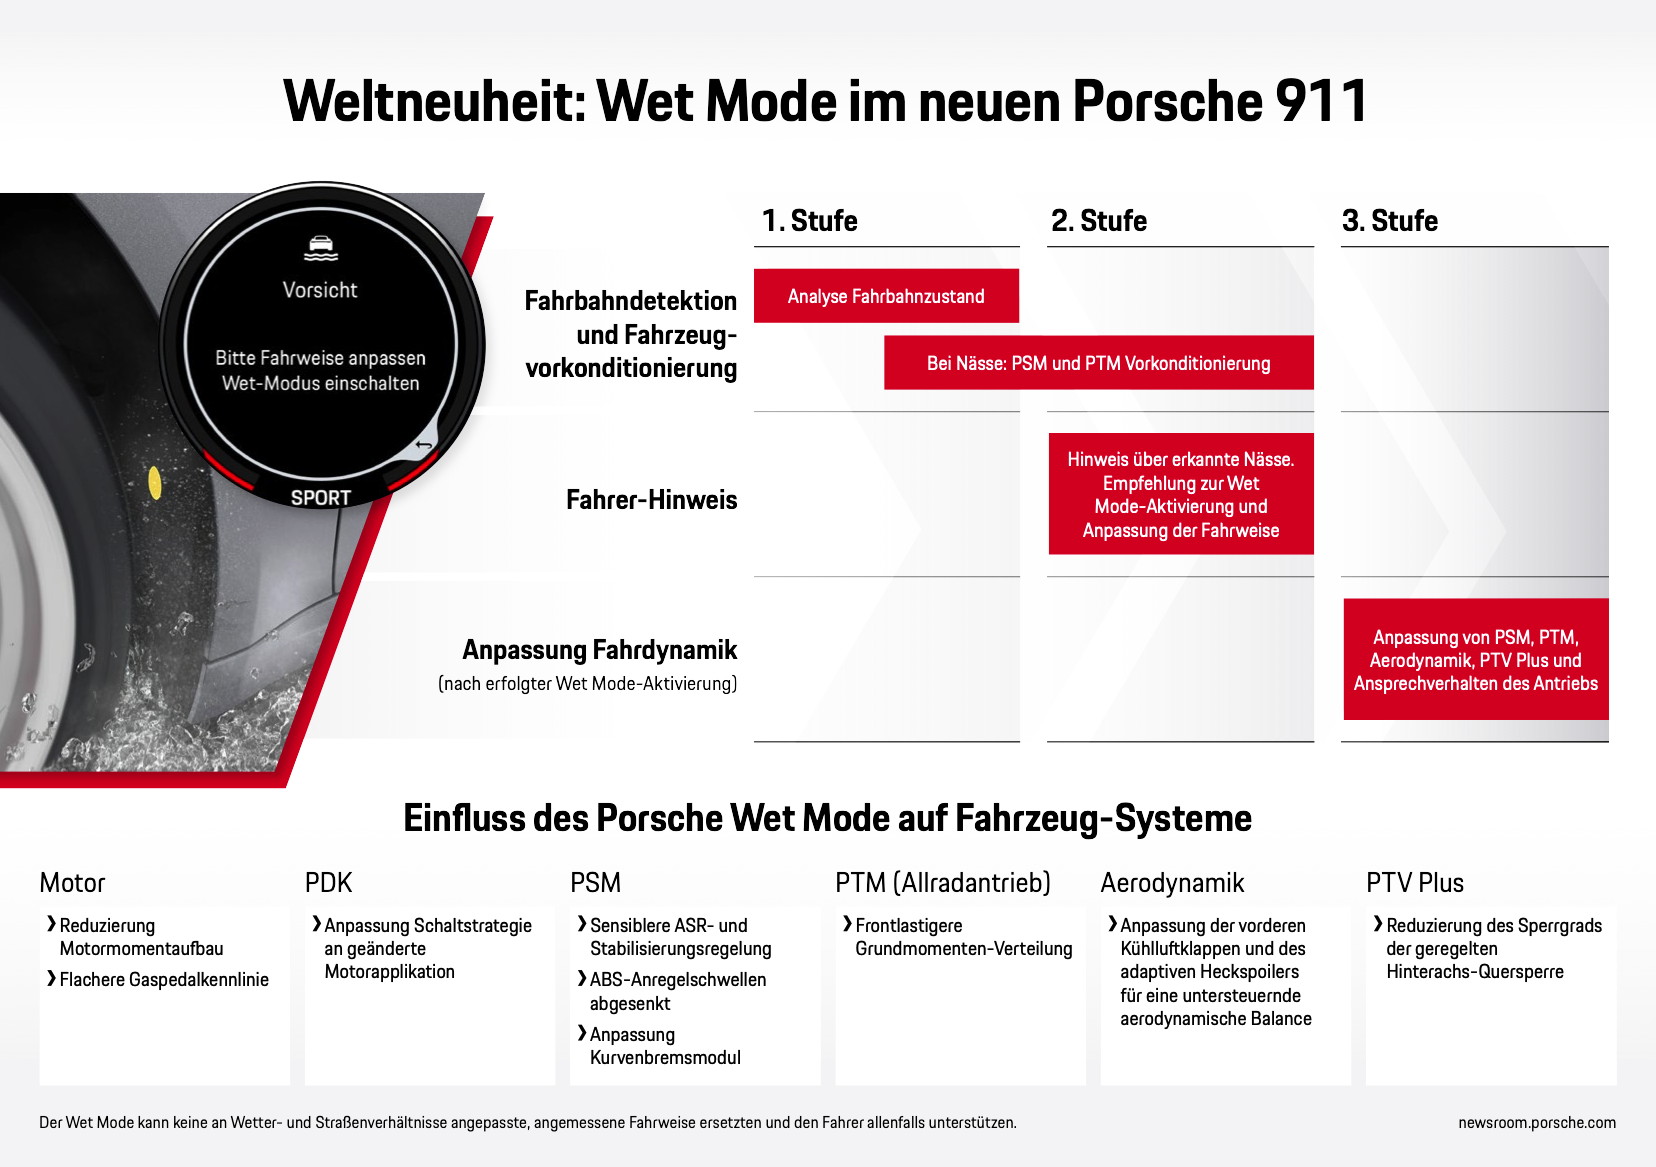 Wet Mode im neuen Porsche 911, Infografik, 2019, Porsche AG